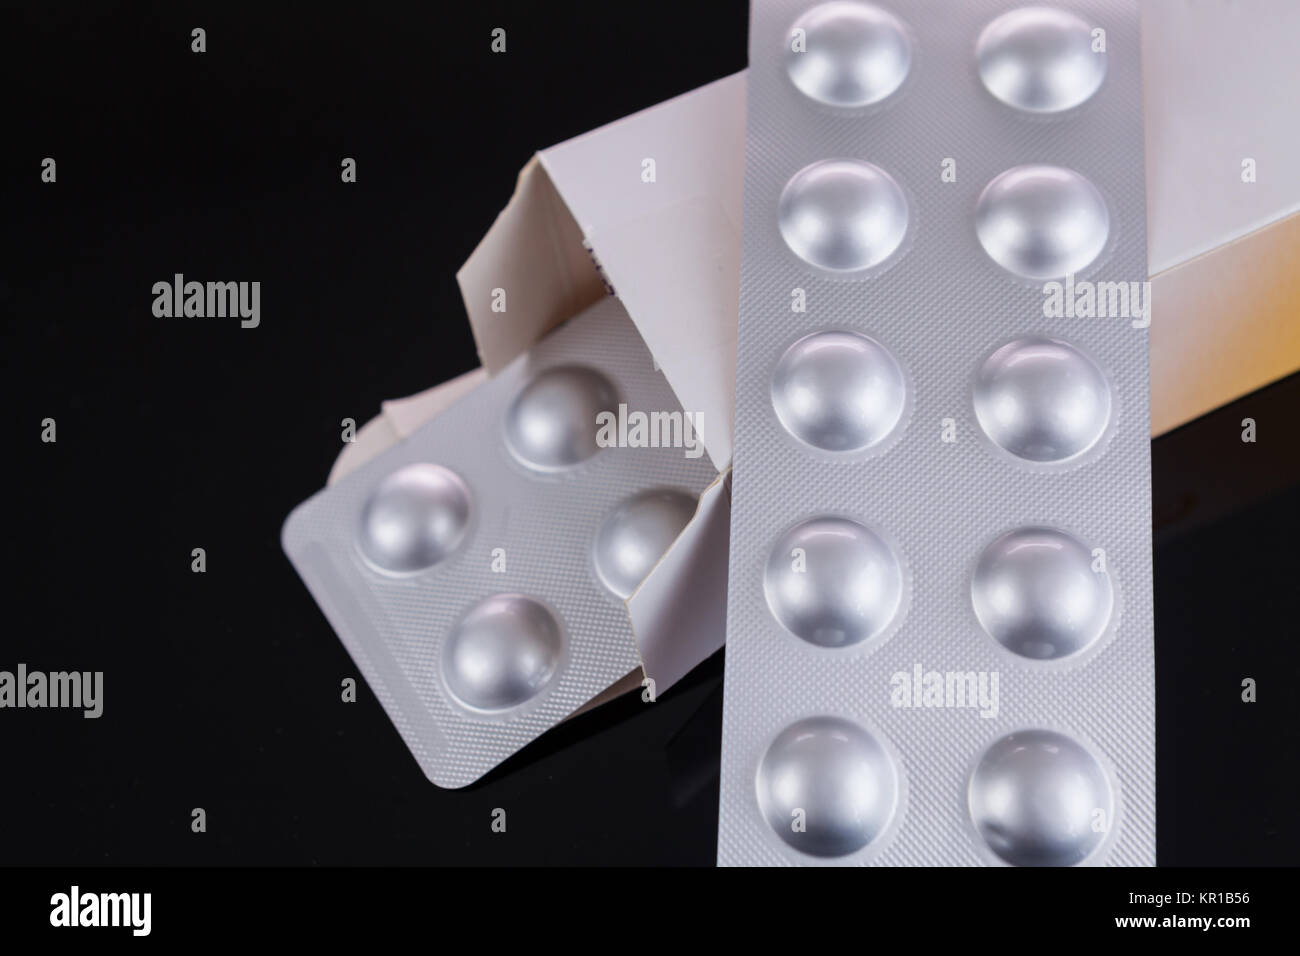 Silberne Blisterpackung von kleinen Pillen zusammen mit Schachtel mit zusätzlichen Packungen durch den offenen Deckel über einem schwarzen Hintergrund in einem Gesundheits-Konzept Foto Stock